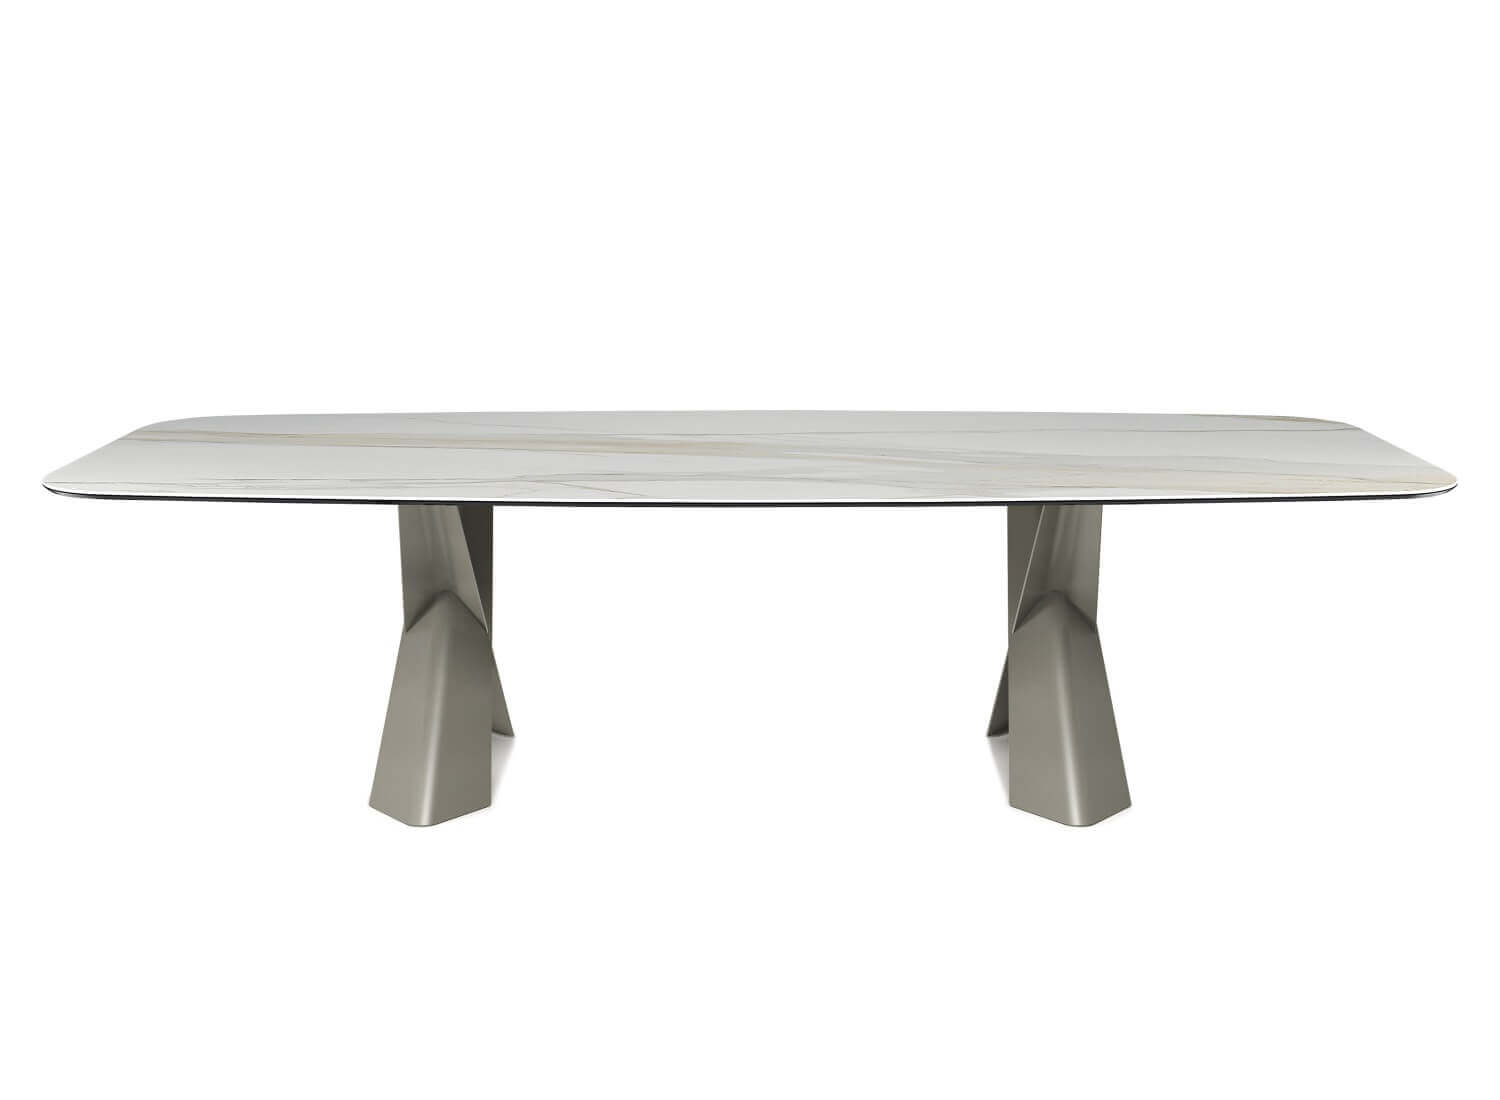 Cattelan Italia Mad Max Keramik Table - Dream Design Interiors Ltd